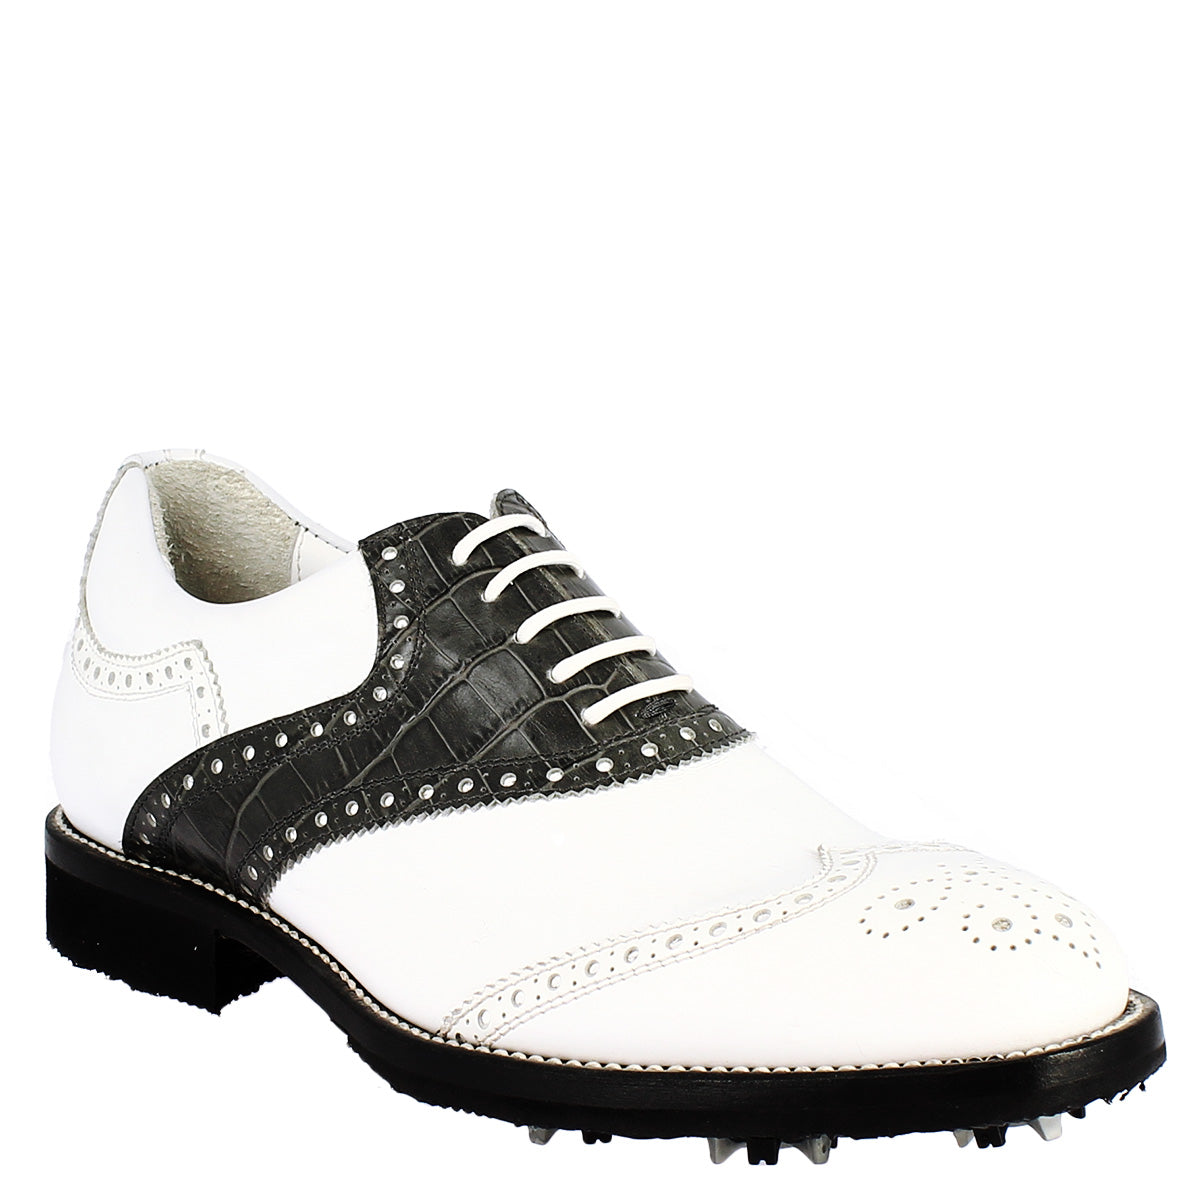 Handgefertigte Damen-Golfschuhe aus schwarz-weißem Vollnarbenleder